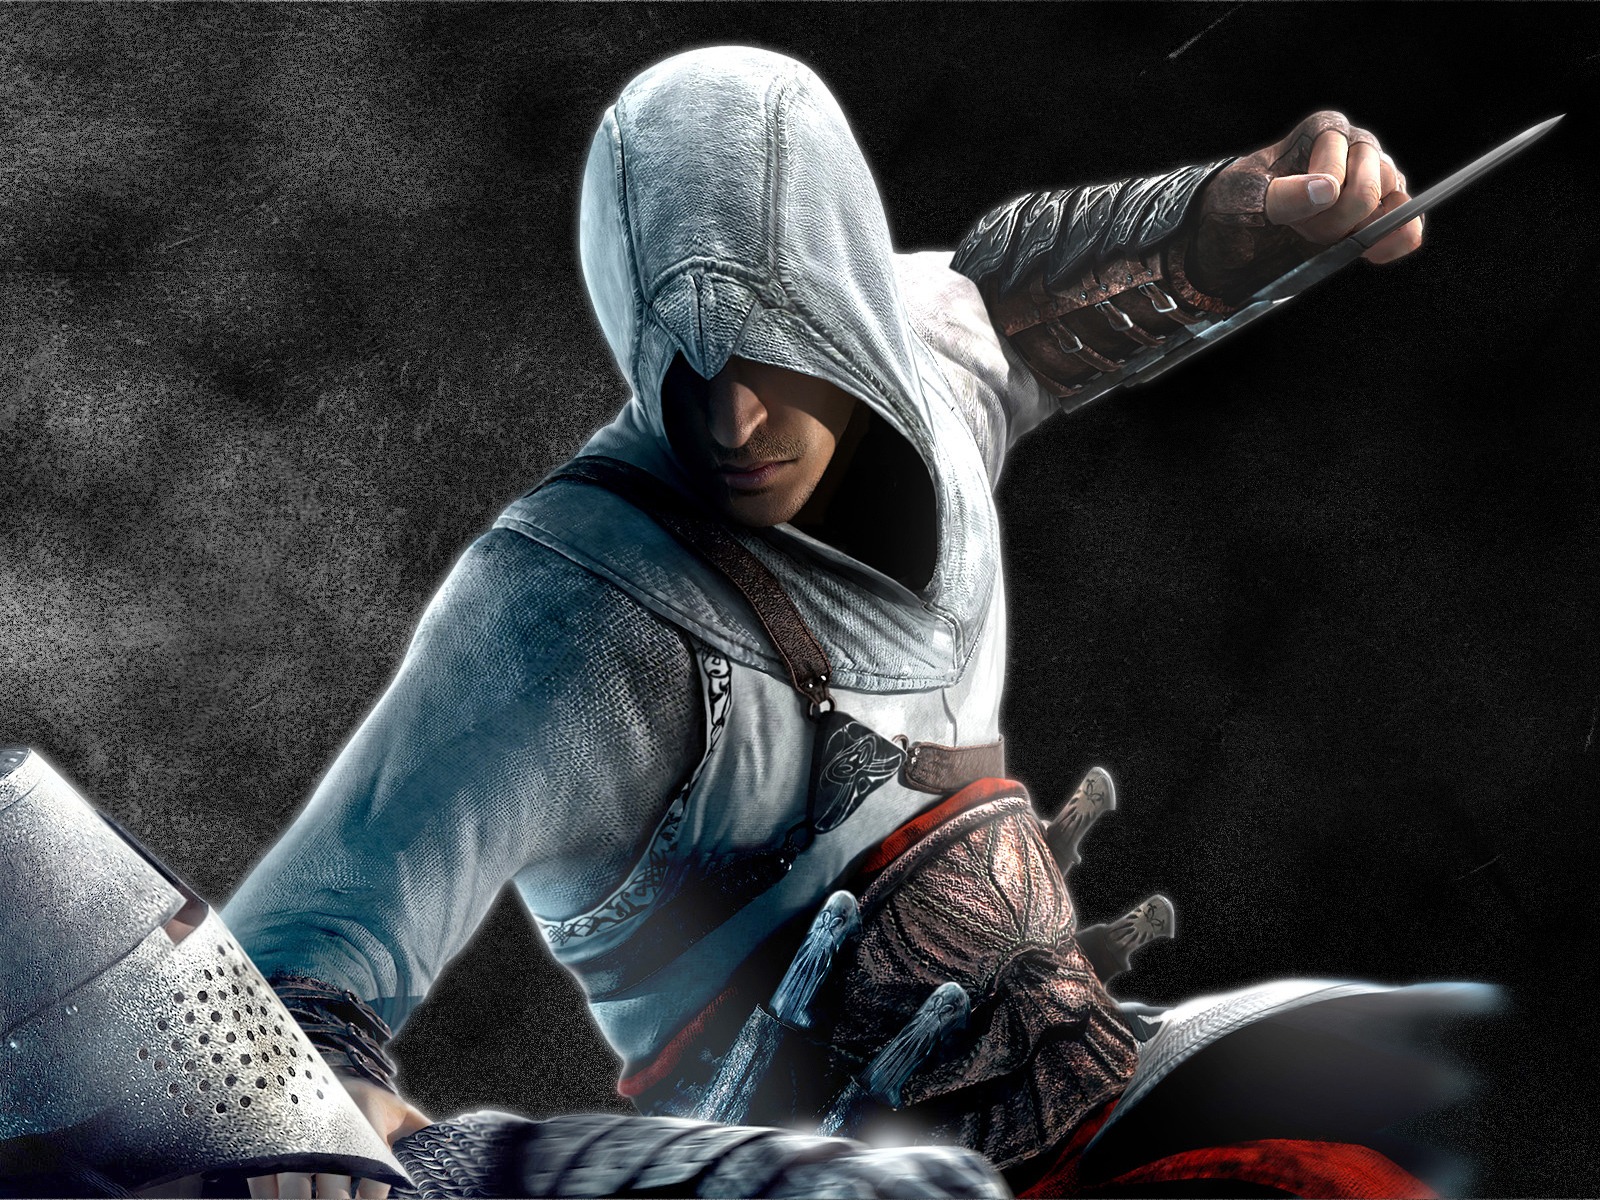 Fond d'ecran Assassin's Creed action